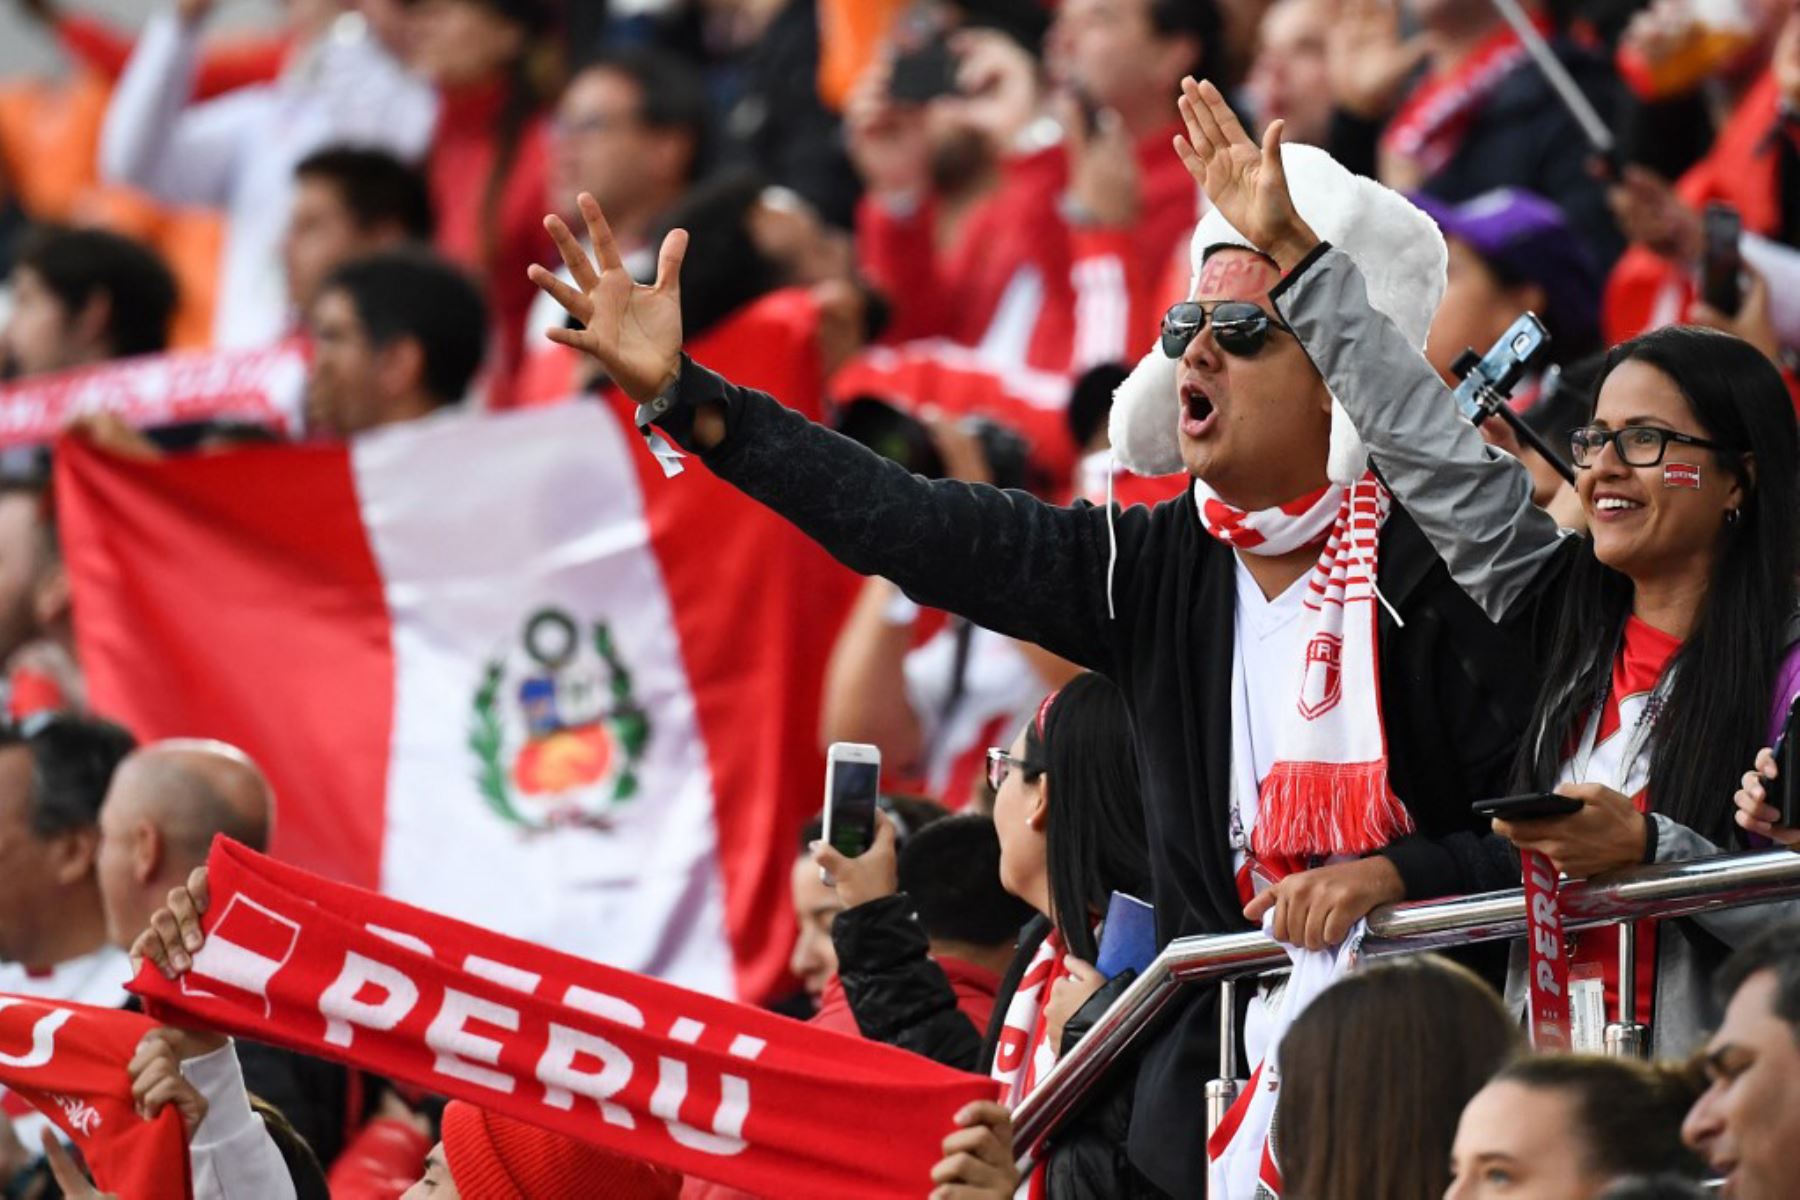 Peru vs. Argentina: ¿Cómo los resultados influyen en la salud mental de los hinchas?